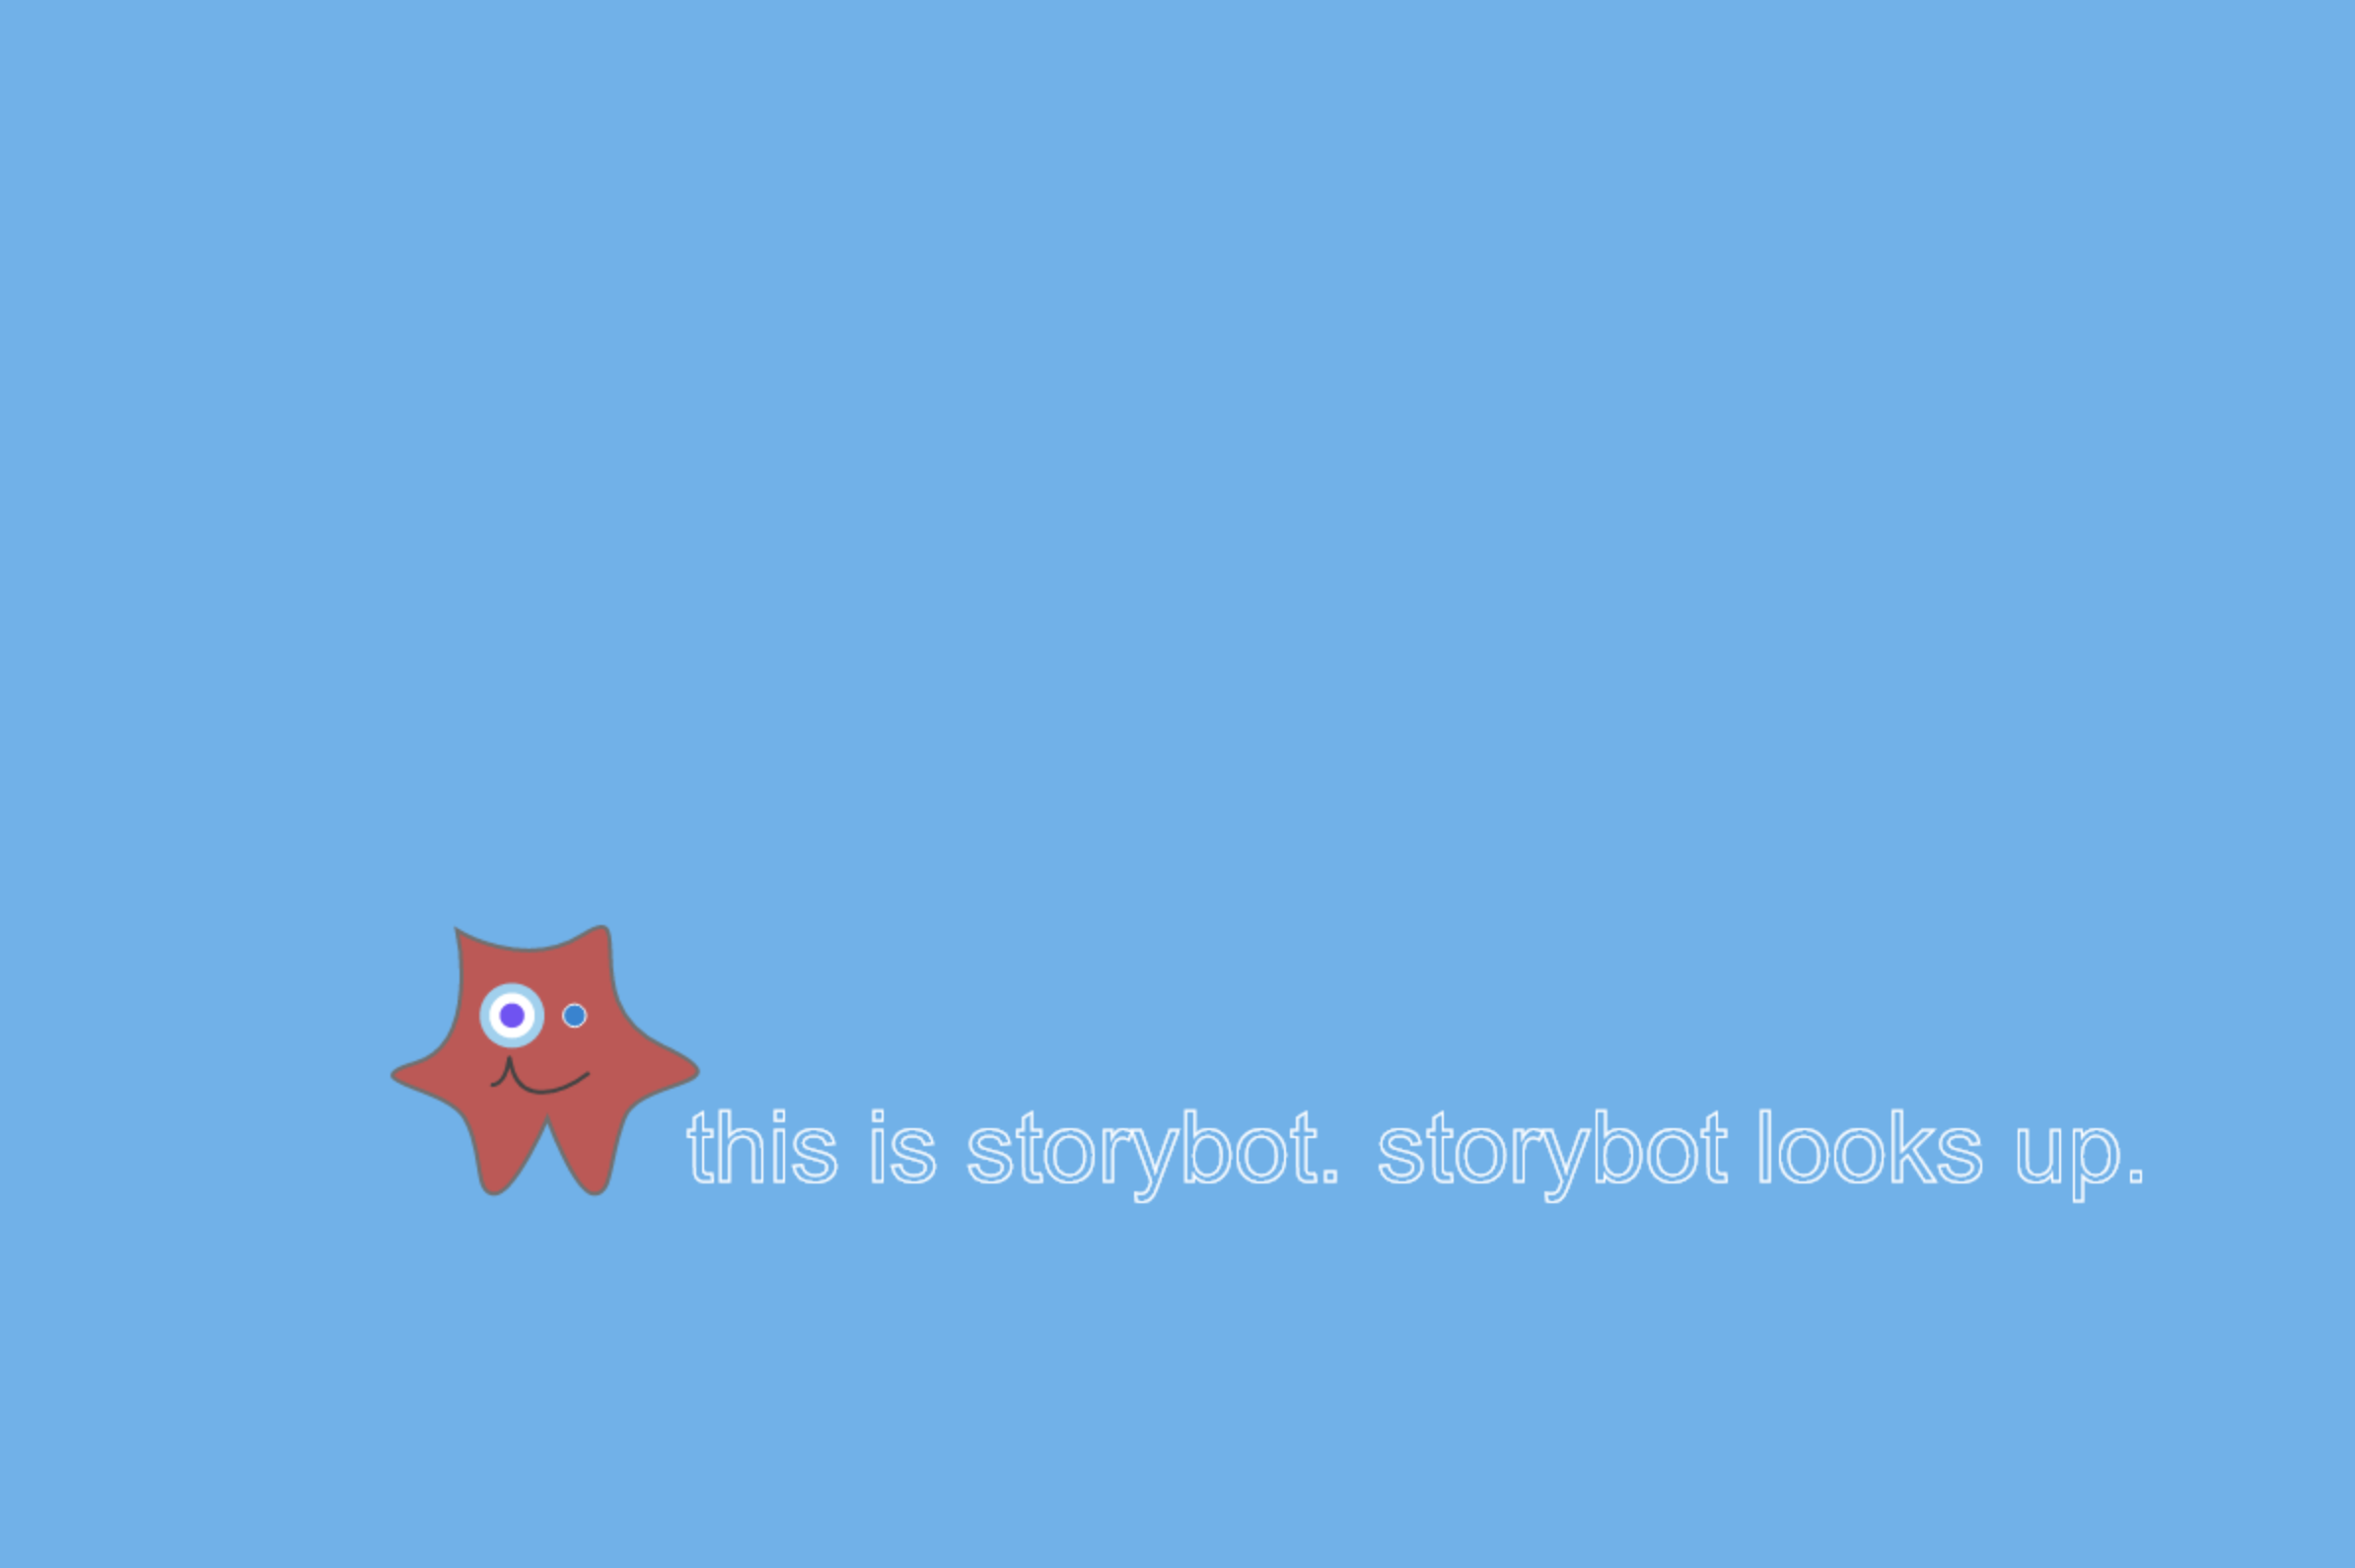 Storybot image io looks up